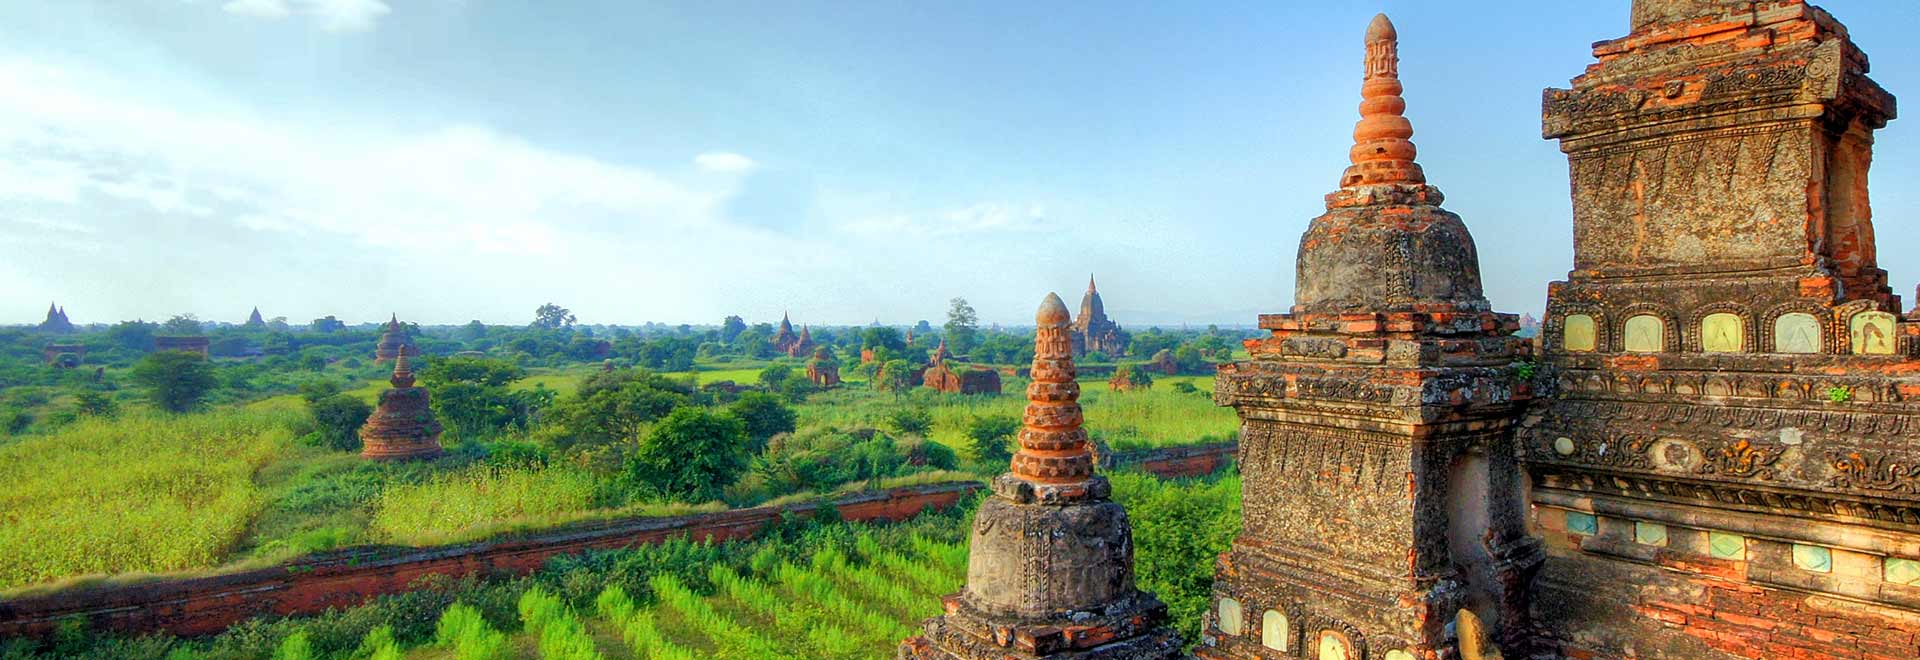 Southeast Asia Myanmar Bagan Temples